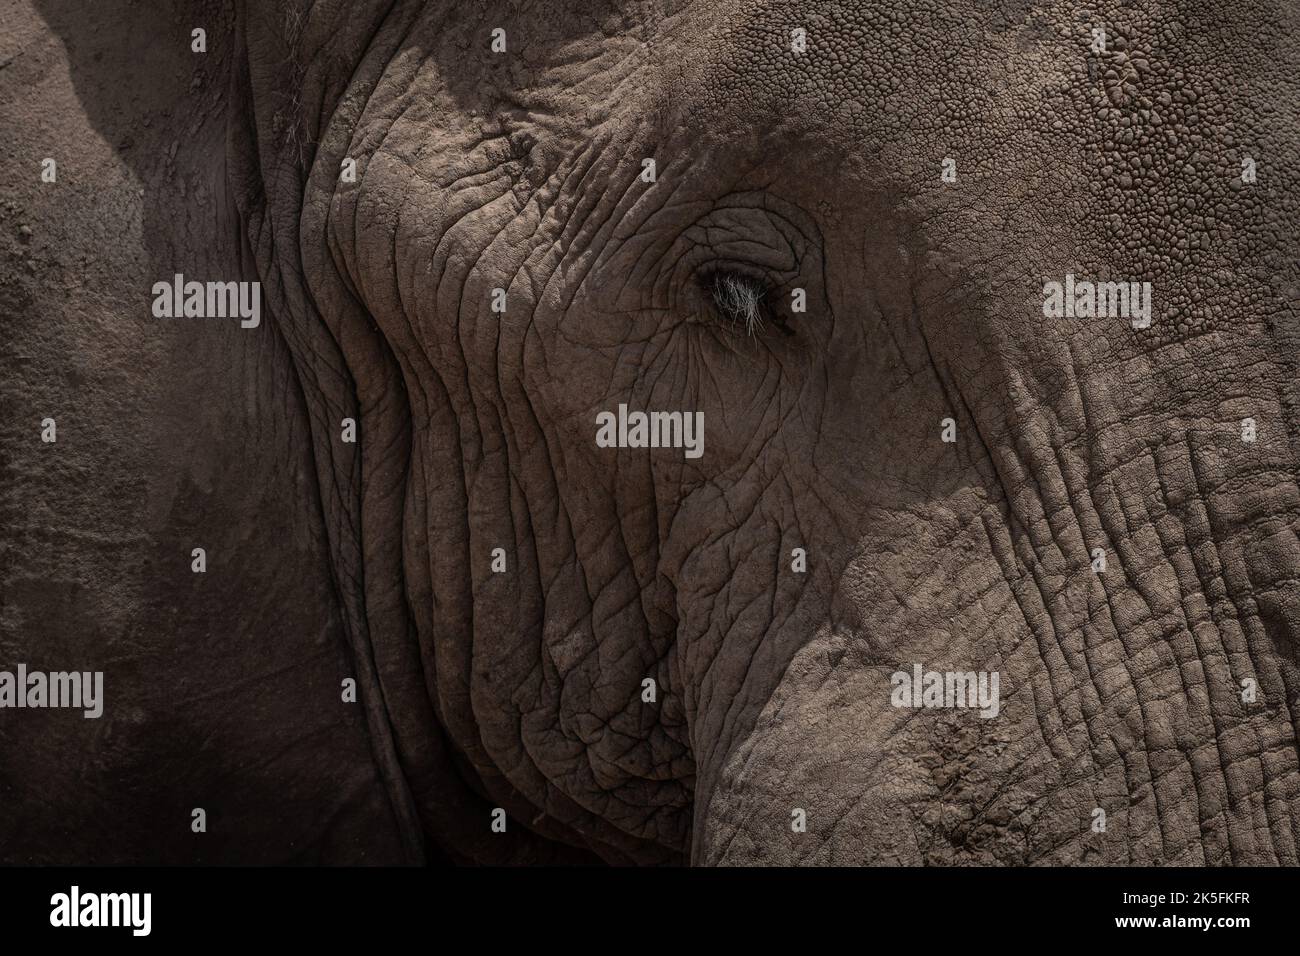 African Elephant, Loxodonta africana, Elephantidae, Amboseli National Park, Kenya, Africa Stock Photo